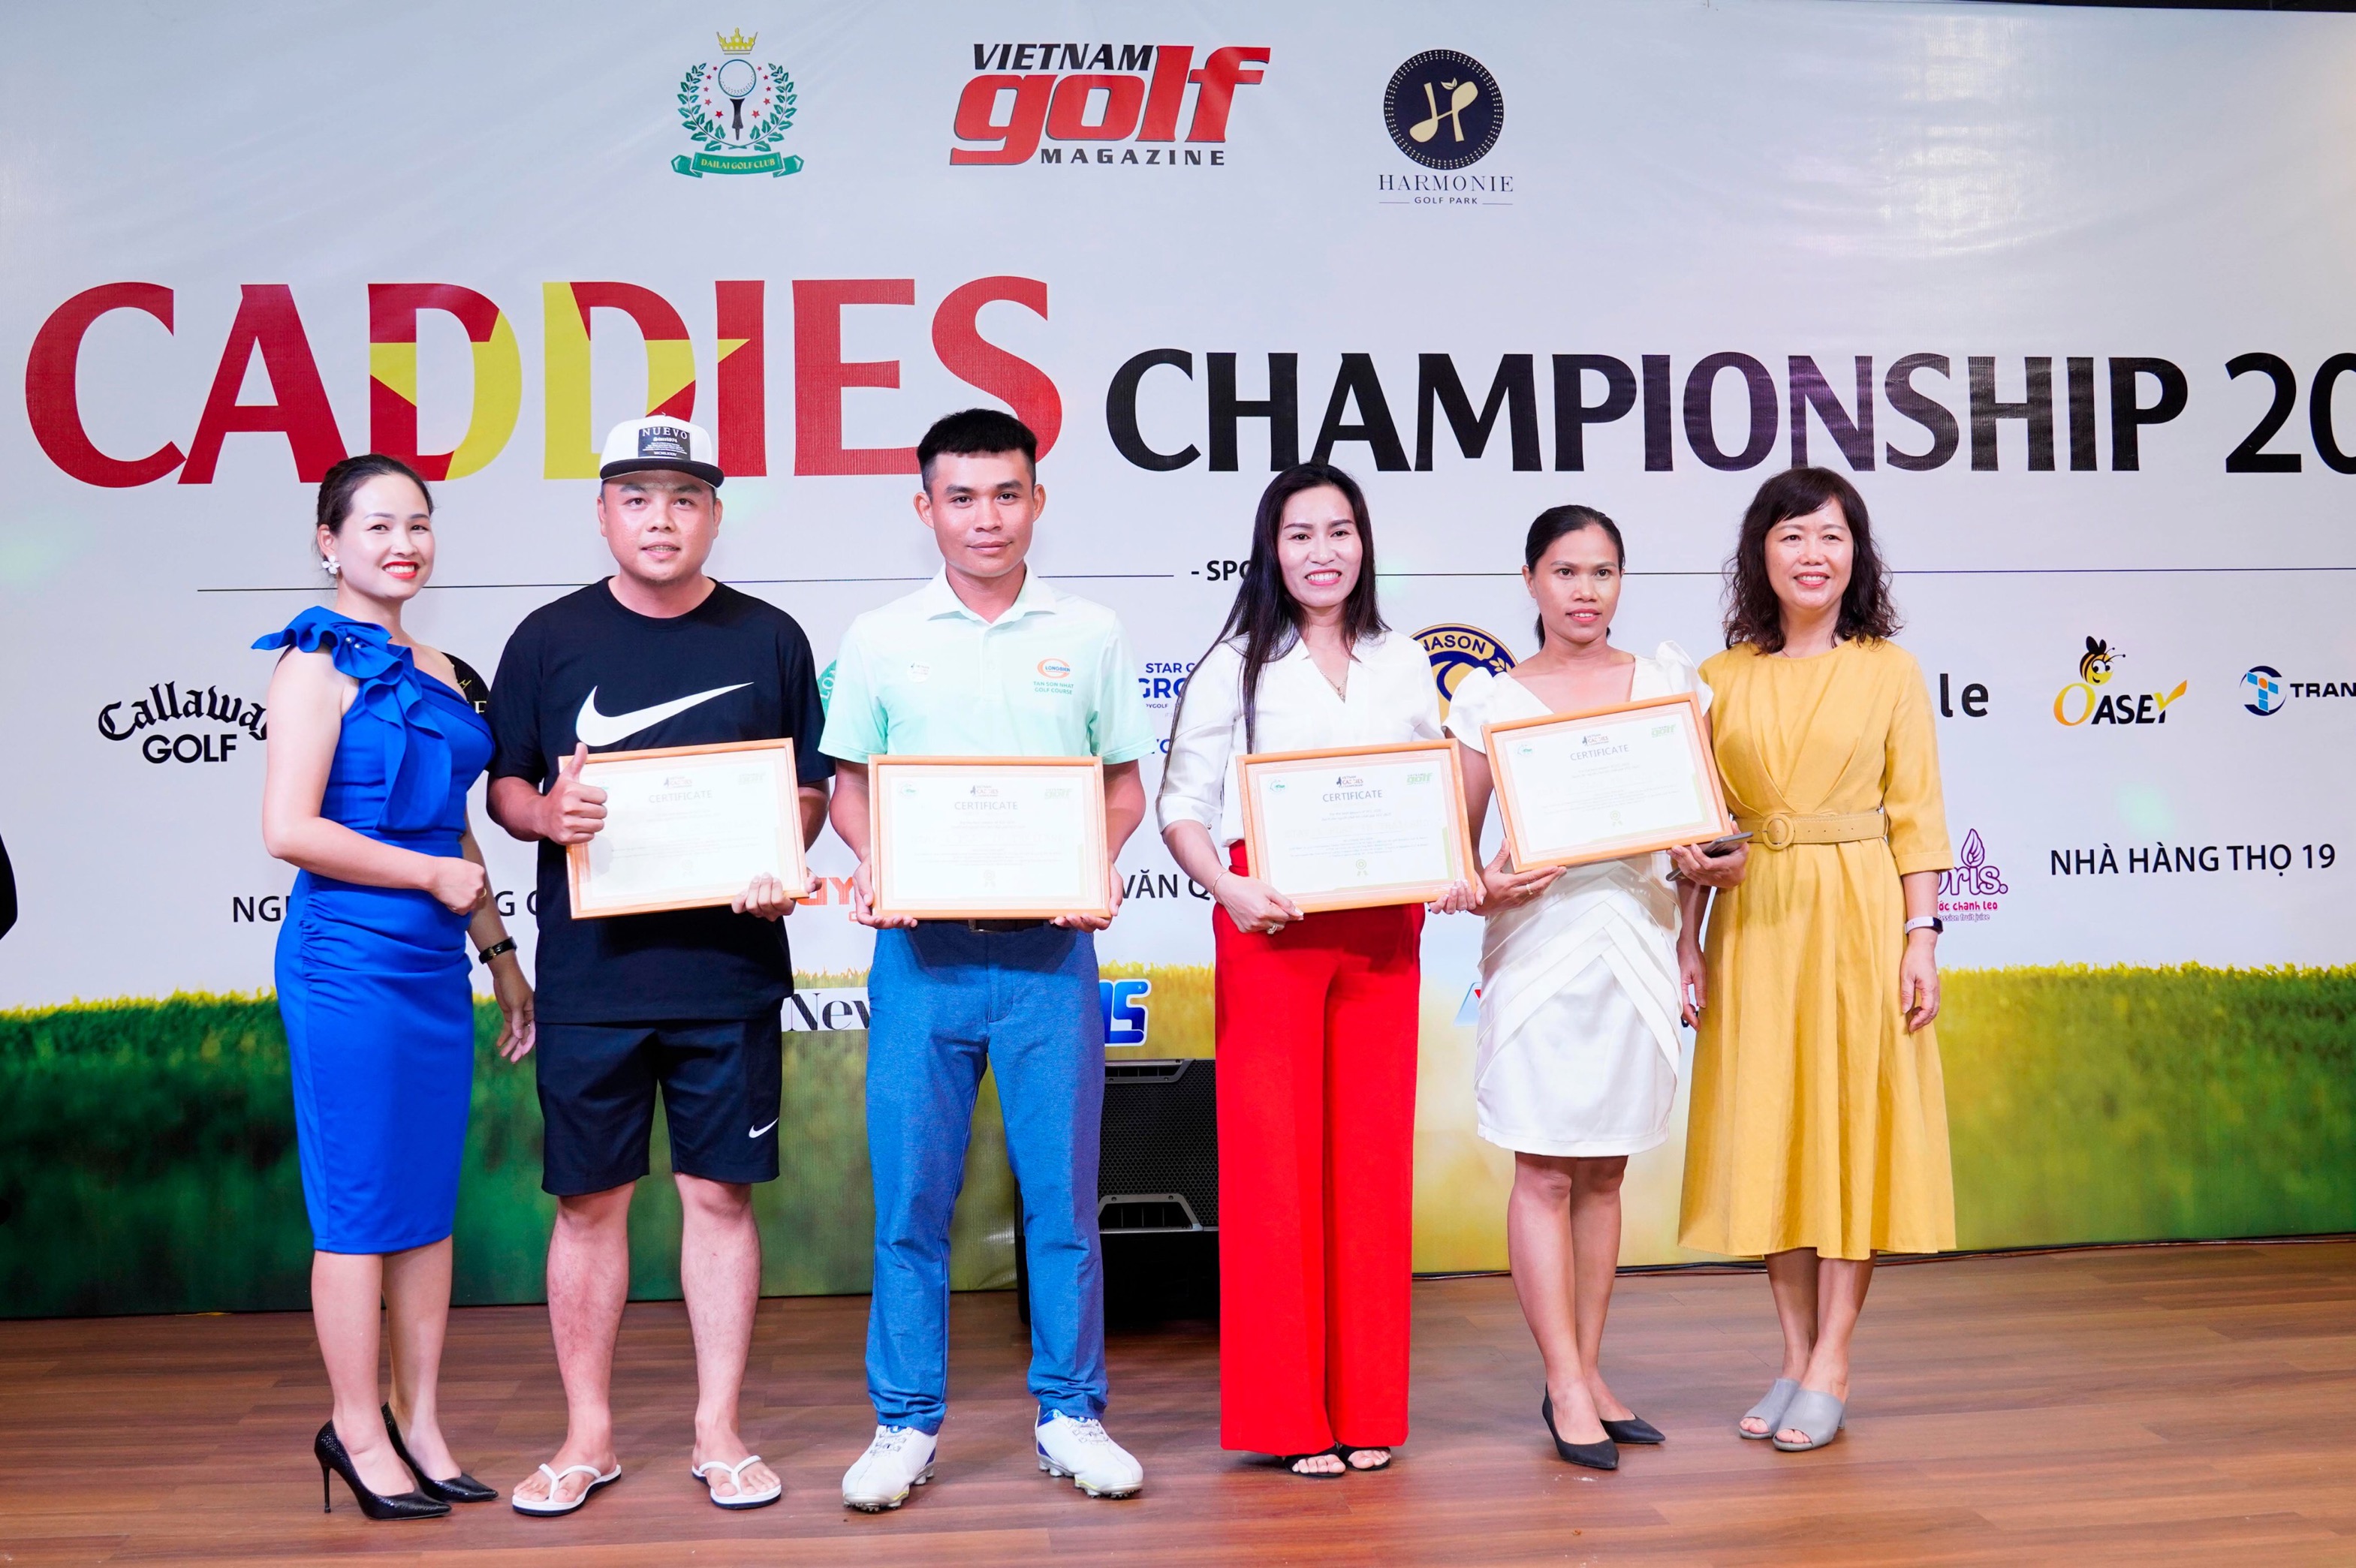 Các caddie khu vực miền Nam giành suất tham dự International Caddie Tournament tại Thái Lan: Nguyễn Khoa Nam (vô địch), Trần Hữu Tài (nhất Bảng A), Đinh Thị Hương (nhất bảng Nữ) và Phan Thị Hằng (nhì bảng Nữ).